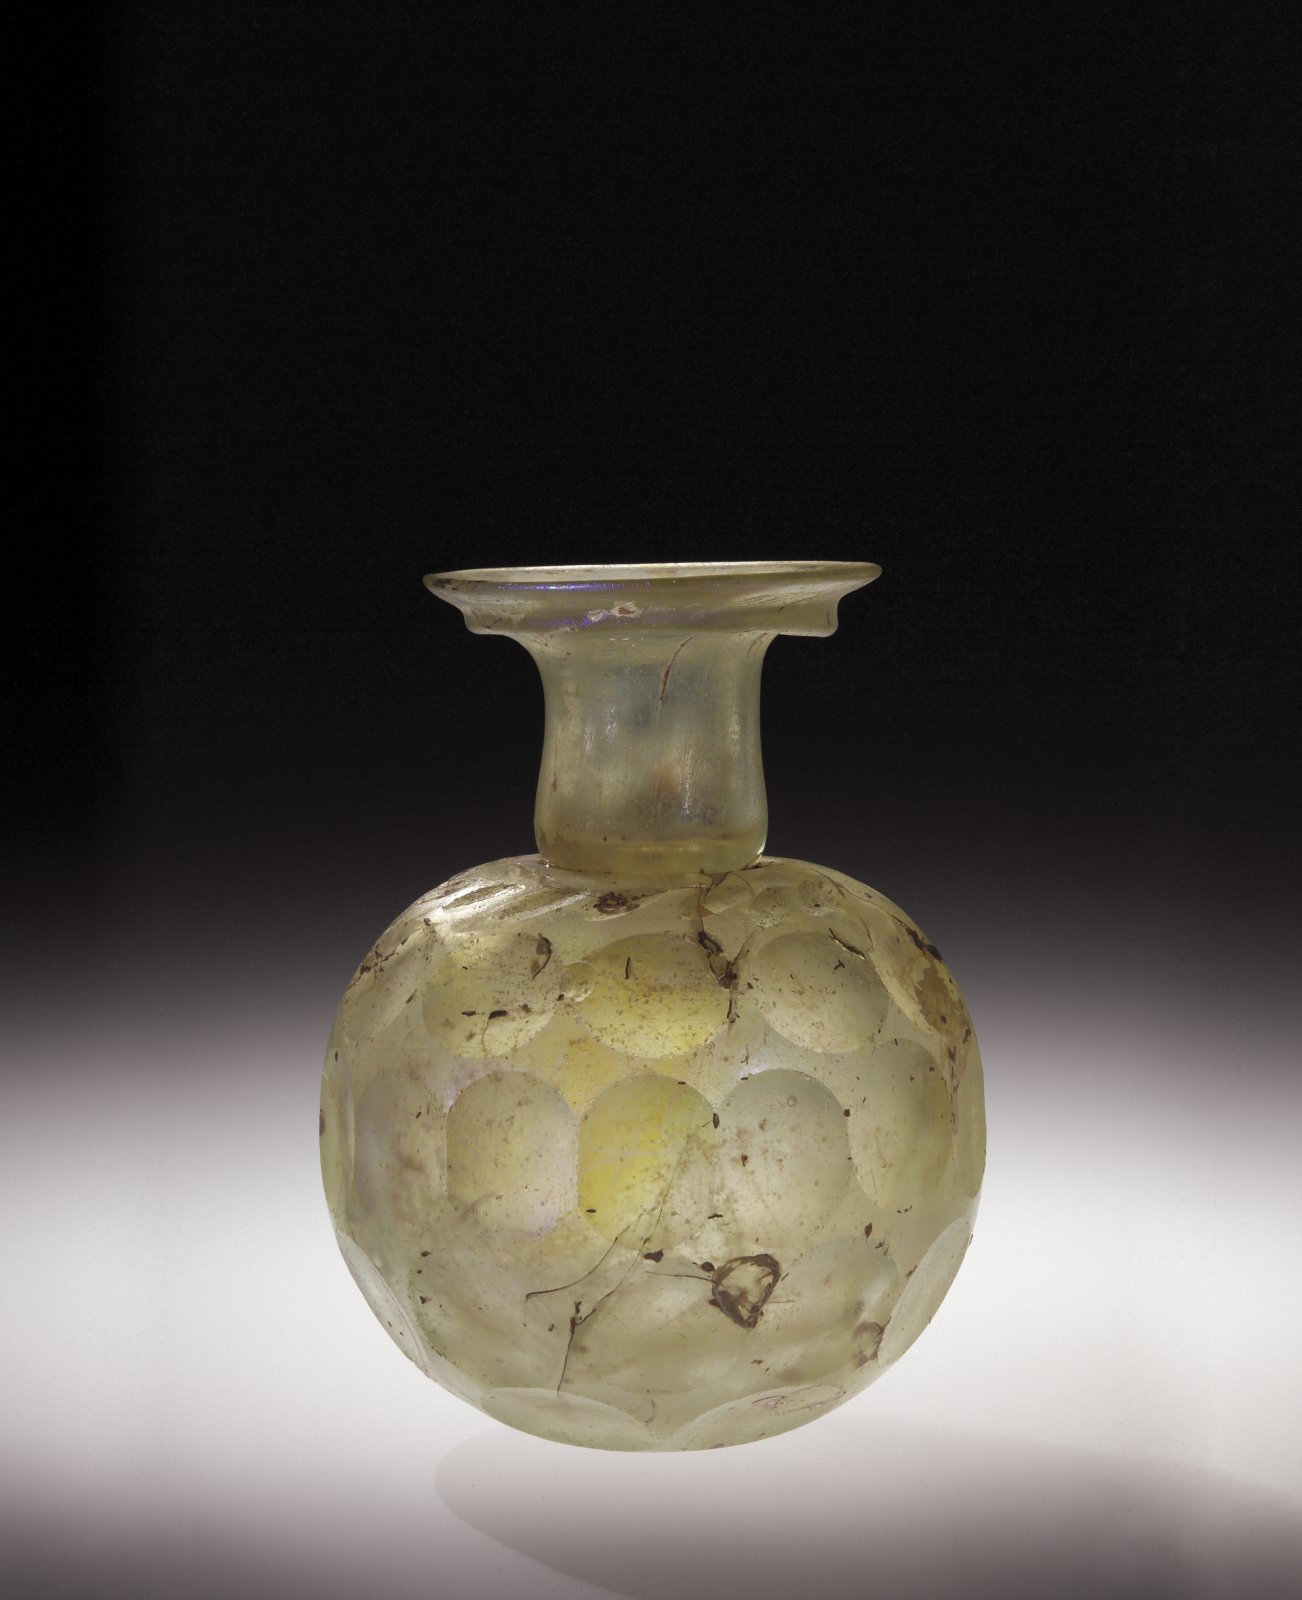 Звонкий стеклянный сосуд. Античный стеклянный сосуд. Древний стеклянный сосуд. Древнеримские вазы из стекла. Сосуды стеклянные декоративные.